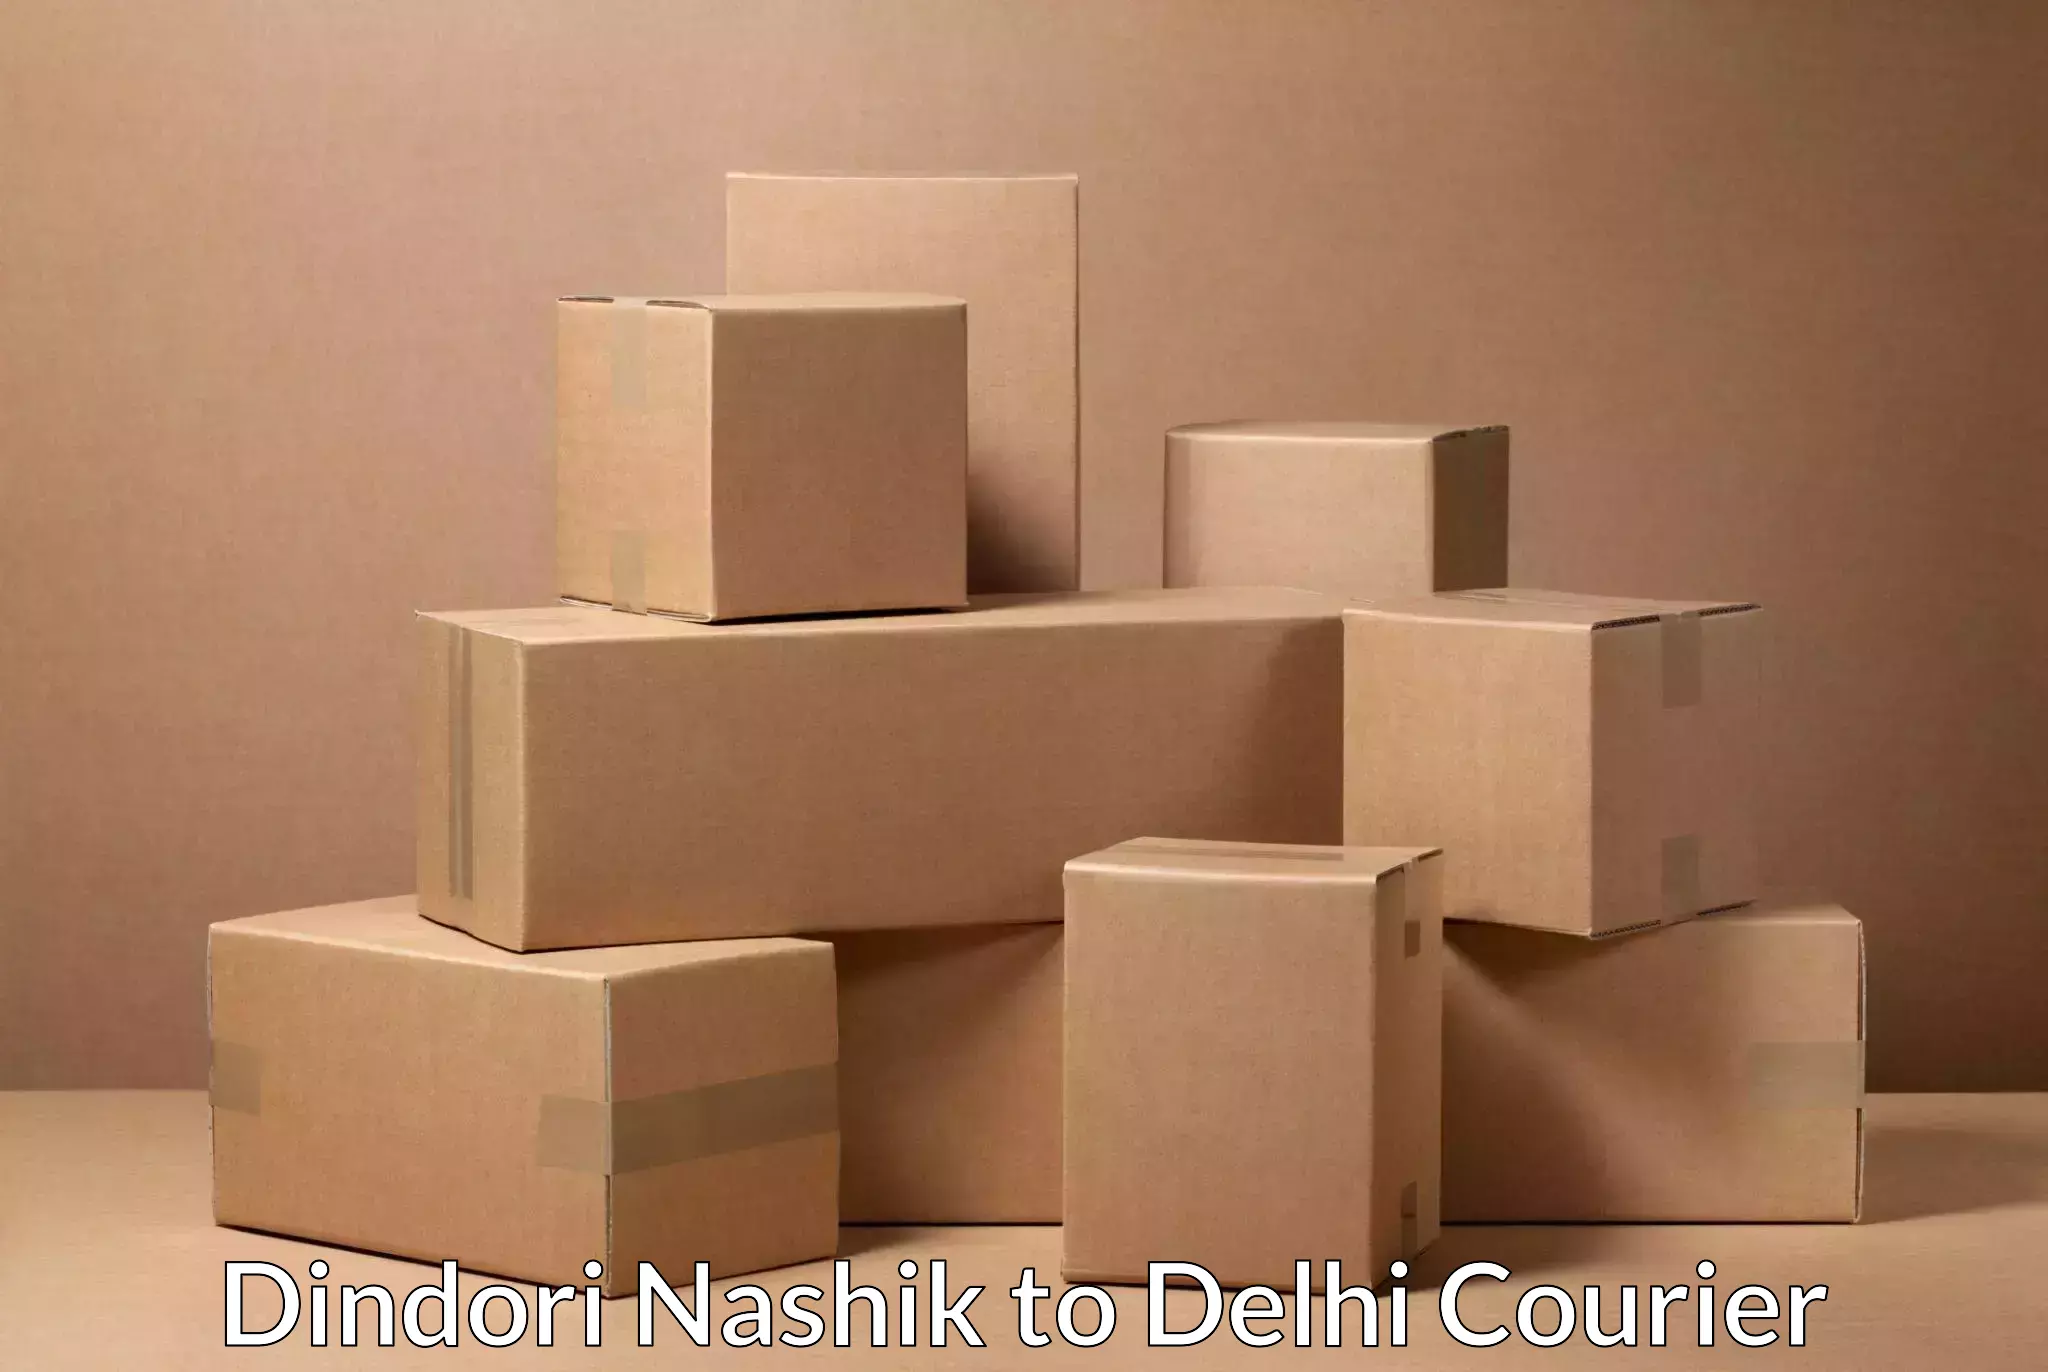 Comprehensive delivery network in Dindori Nashik to Kalkaji